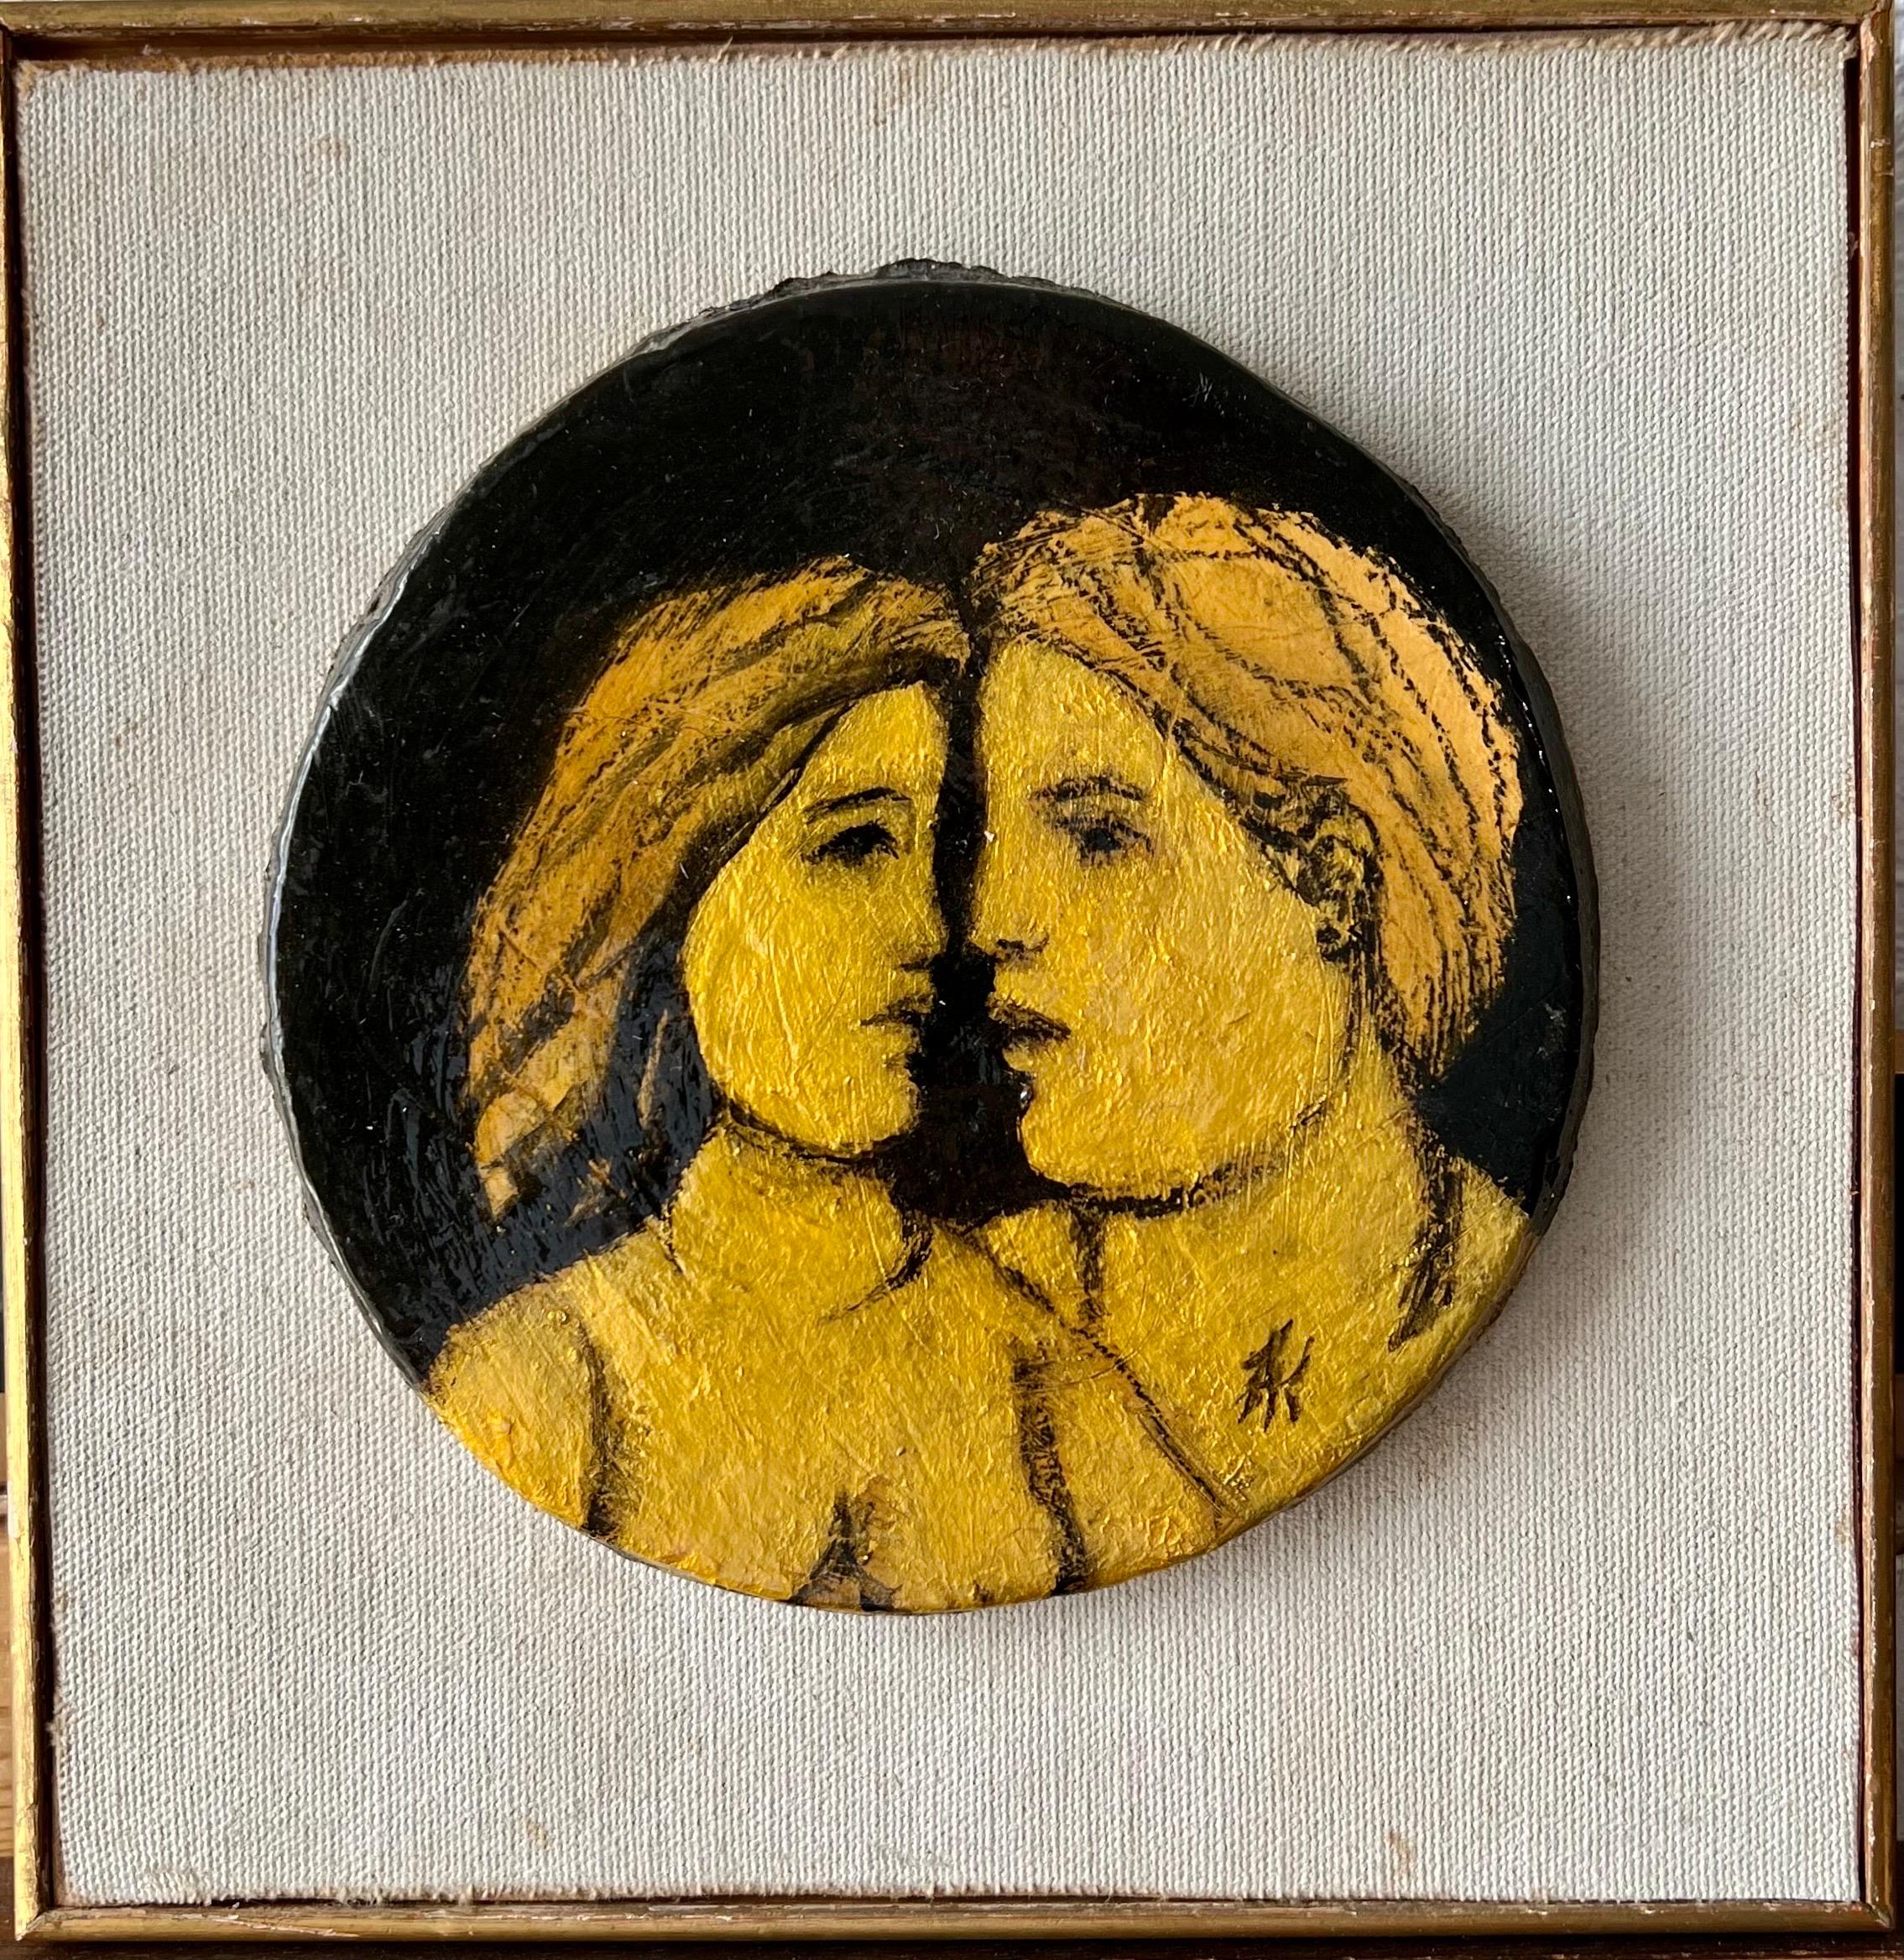 Frank Kleinholz (Brooklyn, 1901 - 1987)
Liebende 
Einzigartige glasierte Miniaturplastik aus Keramik mit Blattgold oder Folie unter der Glasur.
Rekto paraphiert und verso handsigniert mit einer Selbstporträtzeichnung.
Gerahmte Maßnahmen 8,75 x 8,75